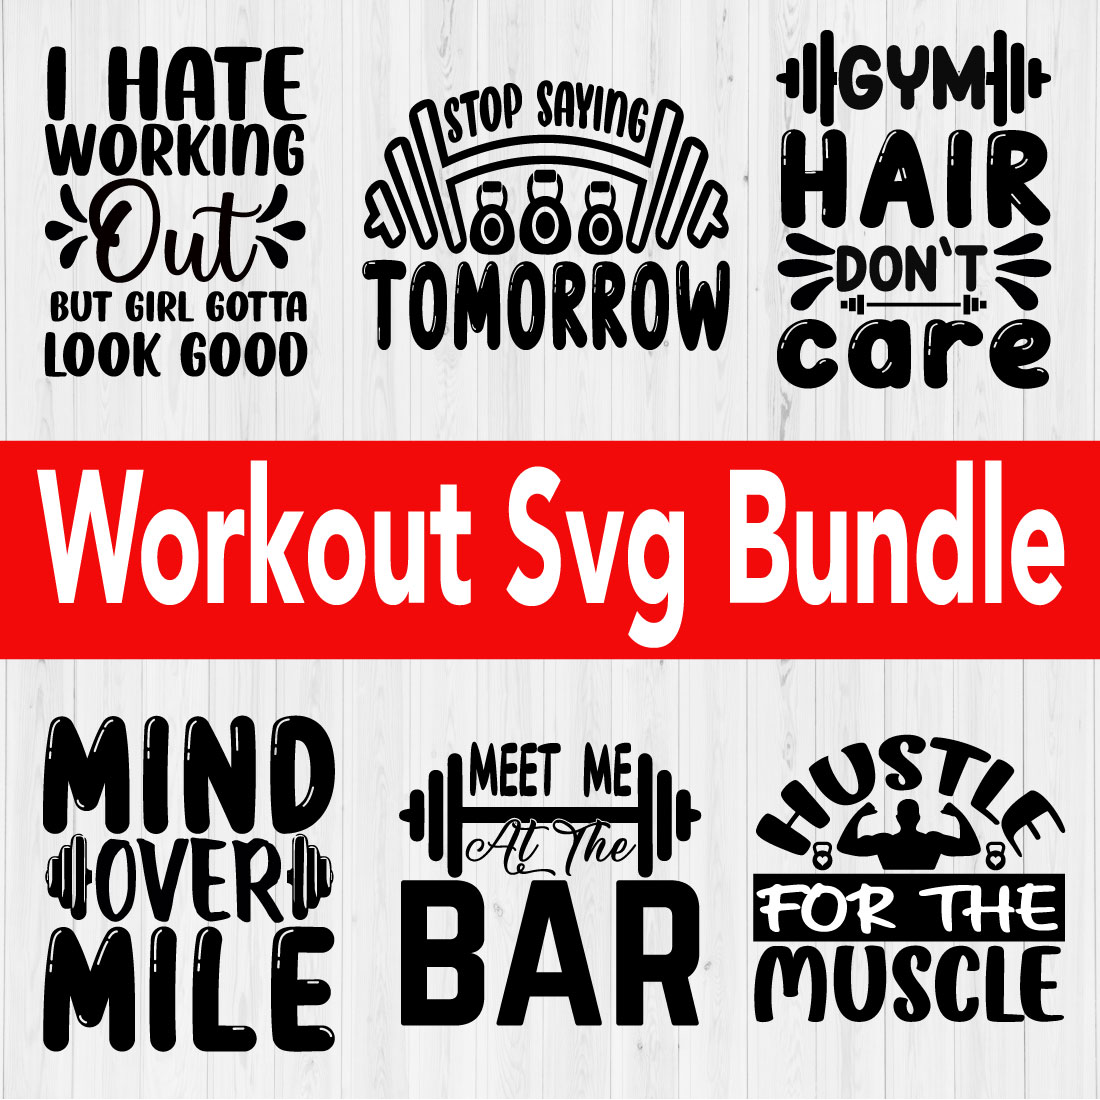 Workout Svg Quotes Bundle Vol11 cover image.